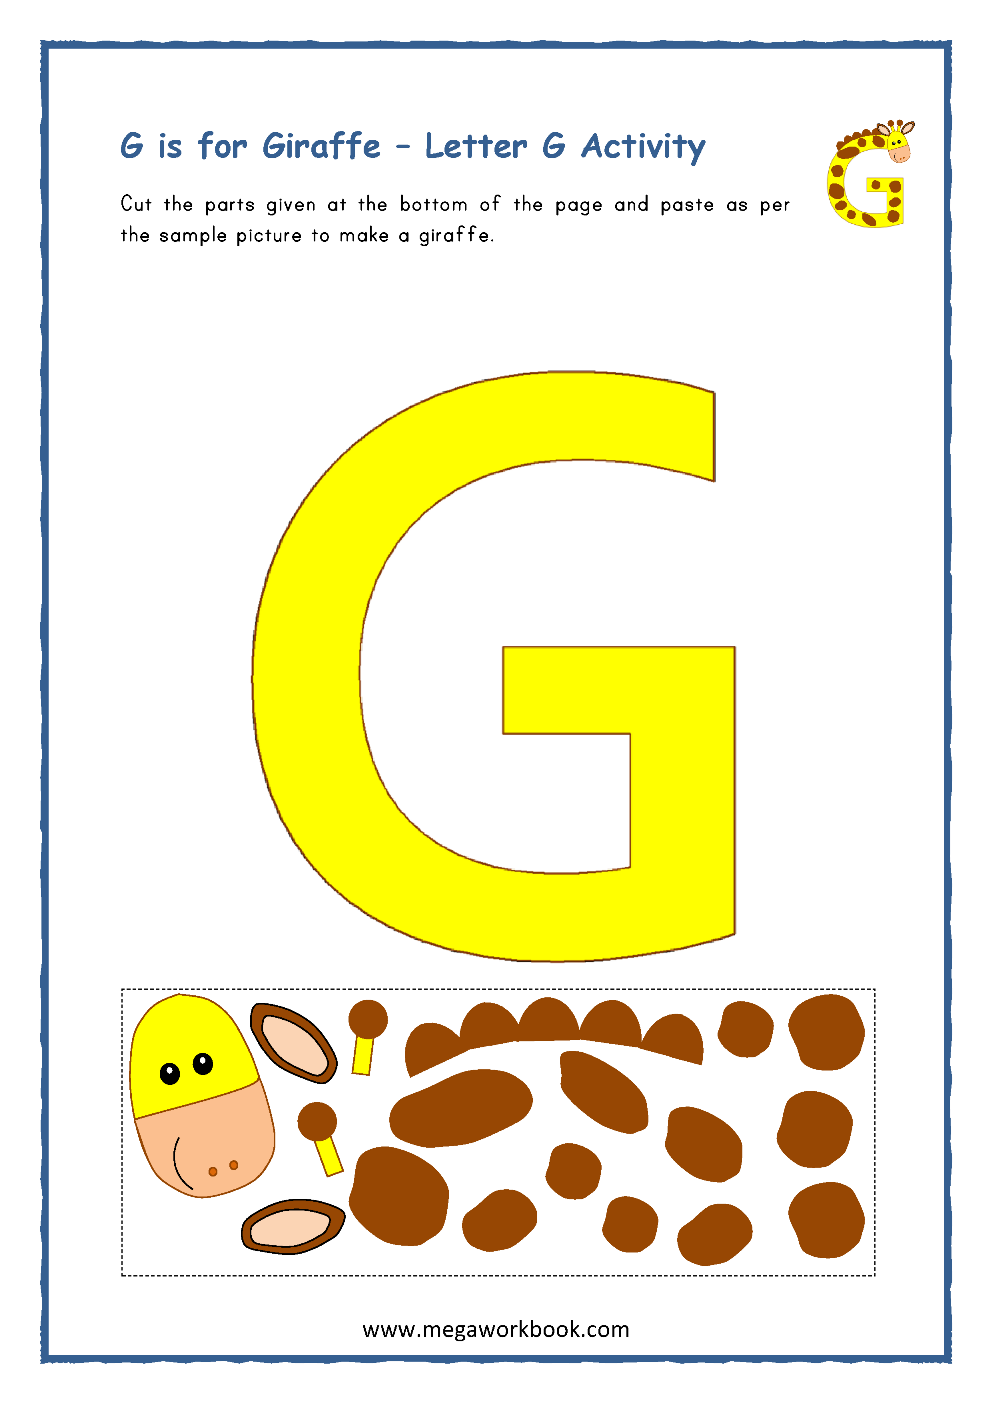 Letter G Activities - Letter G Worksheets - Letter G Crafts For ...